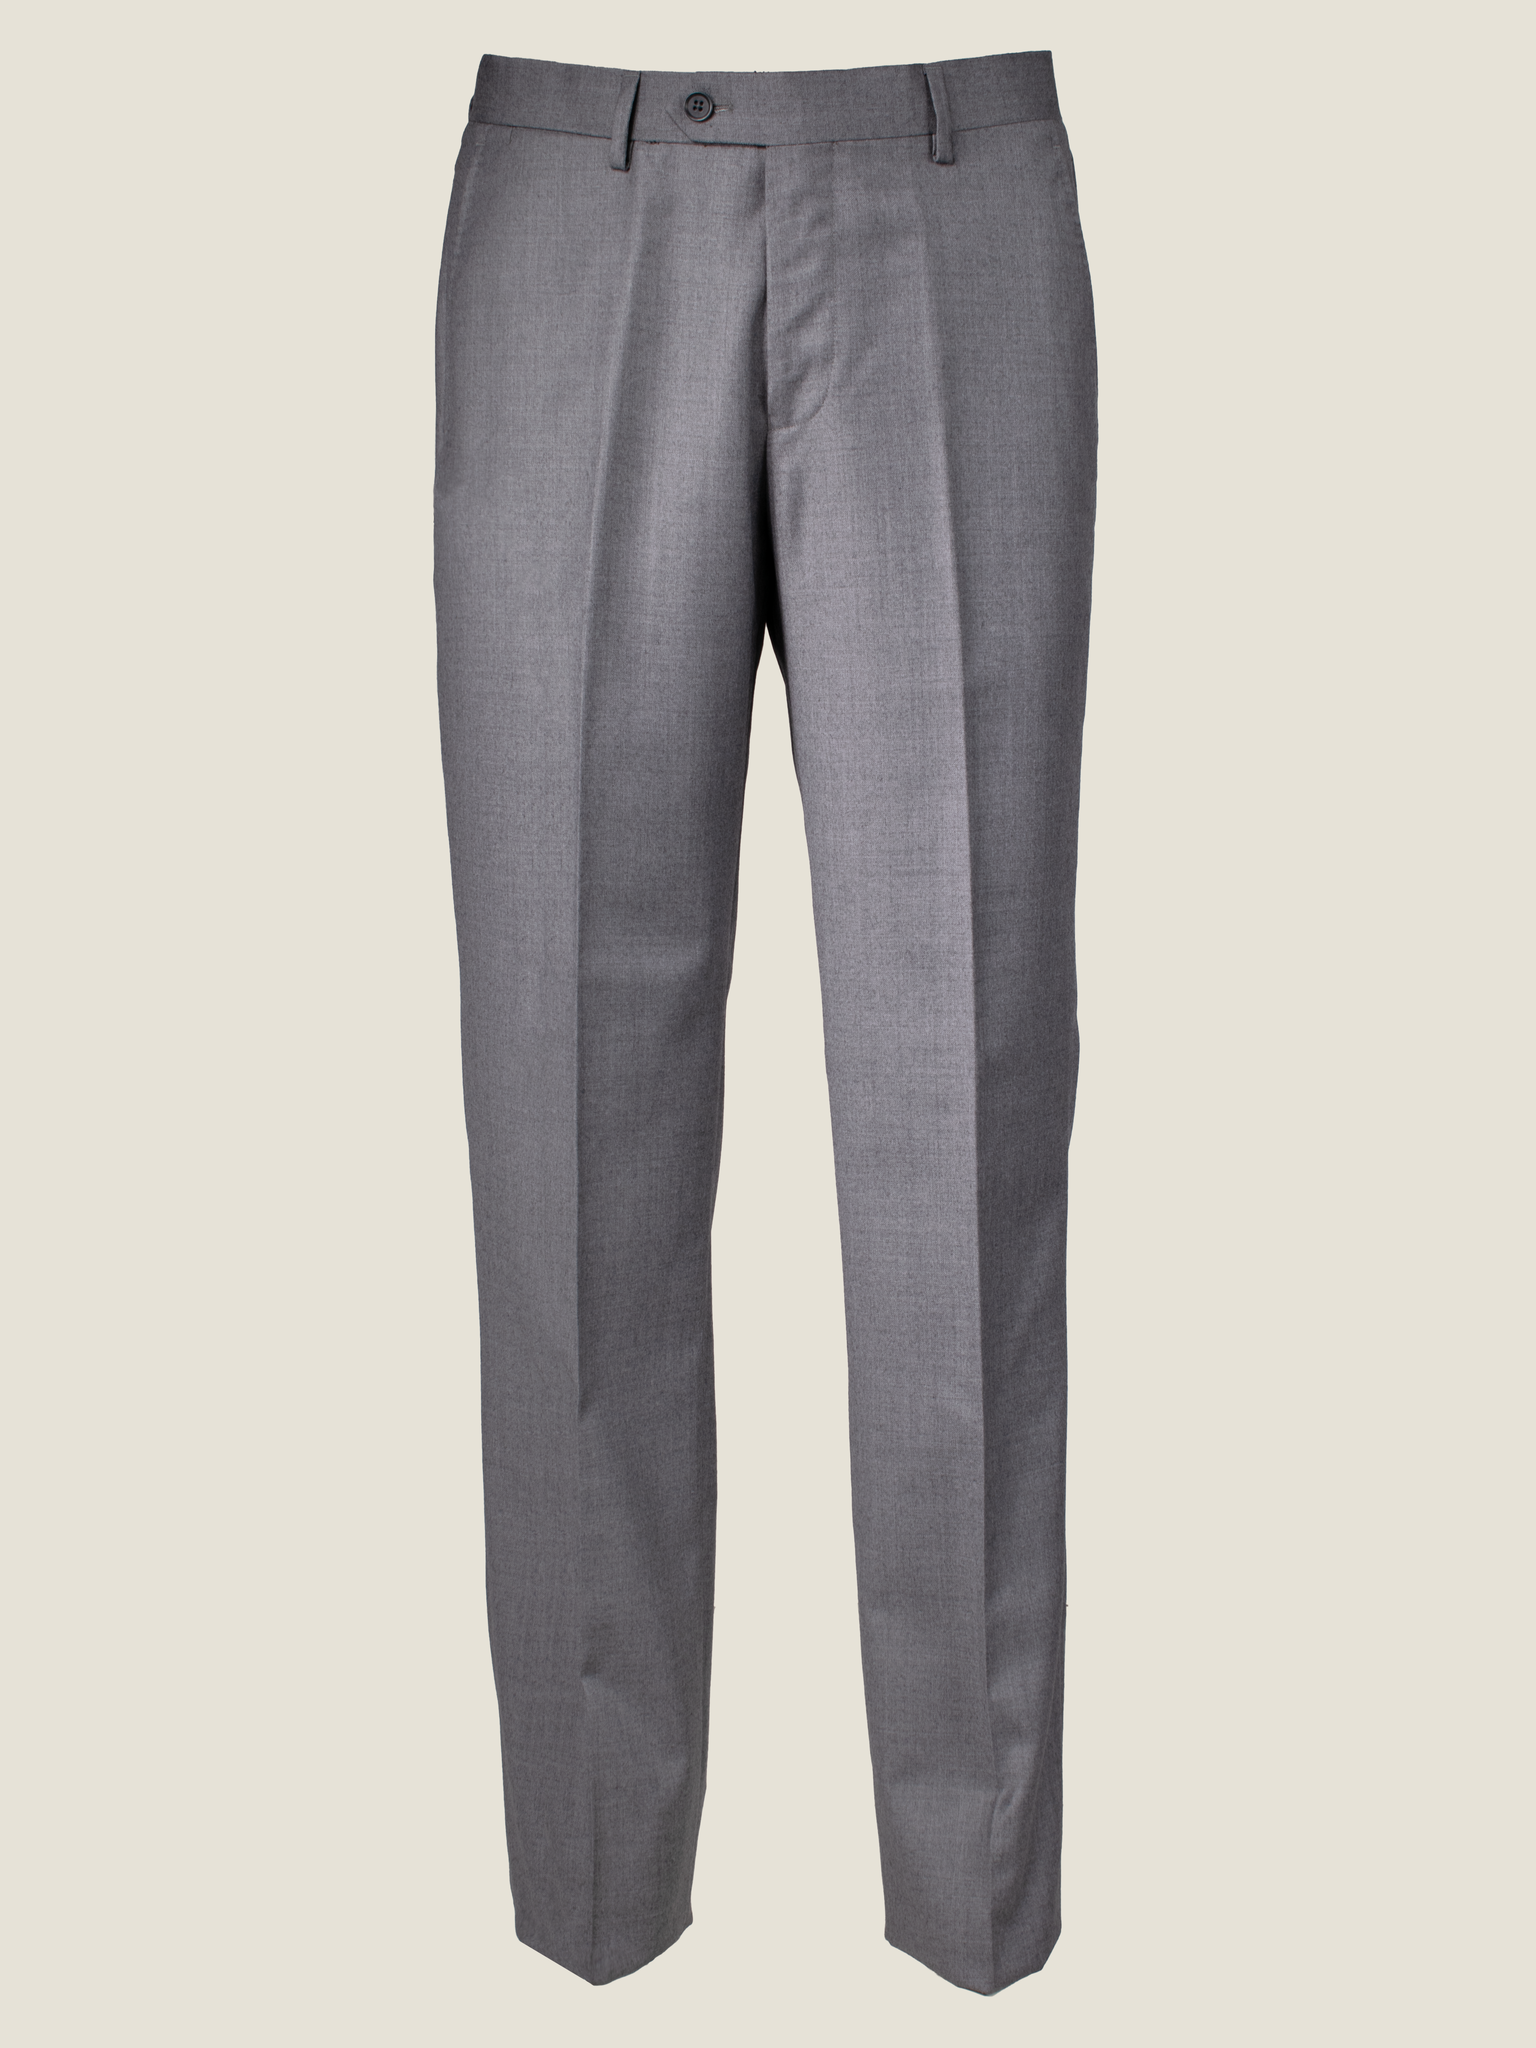 Essential Grey Suit